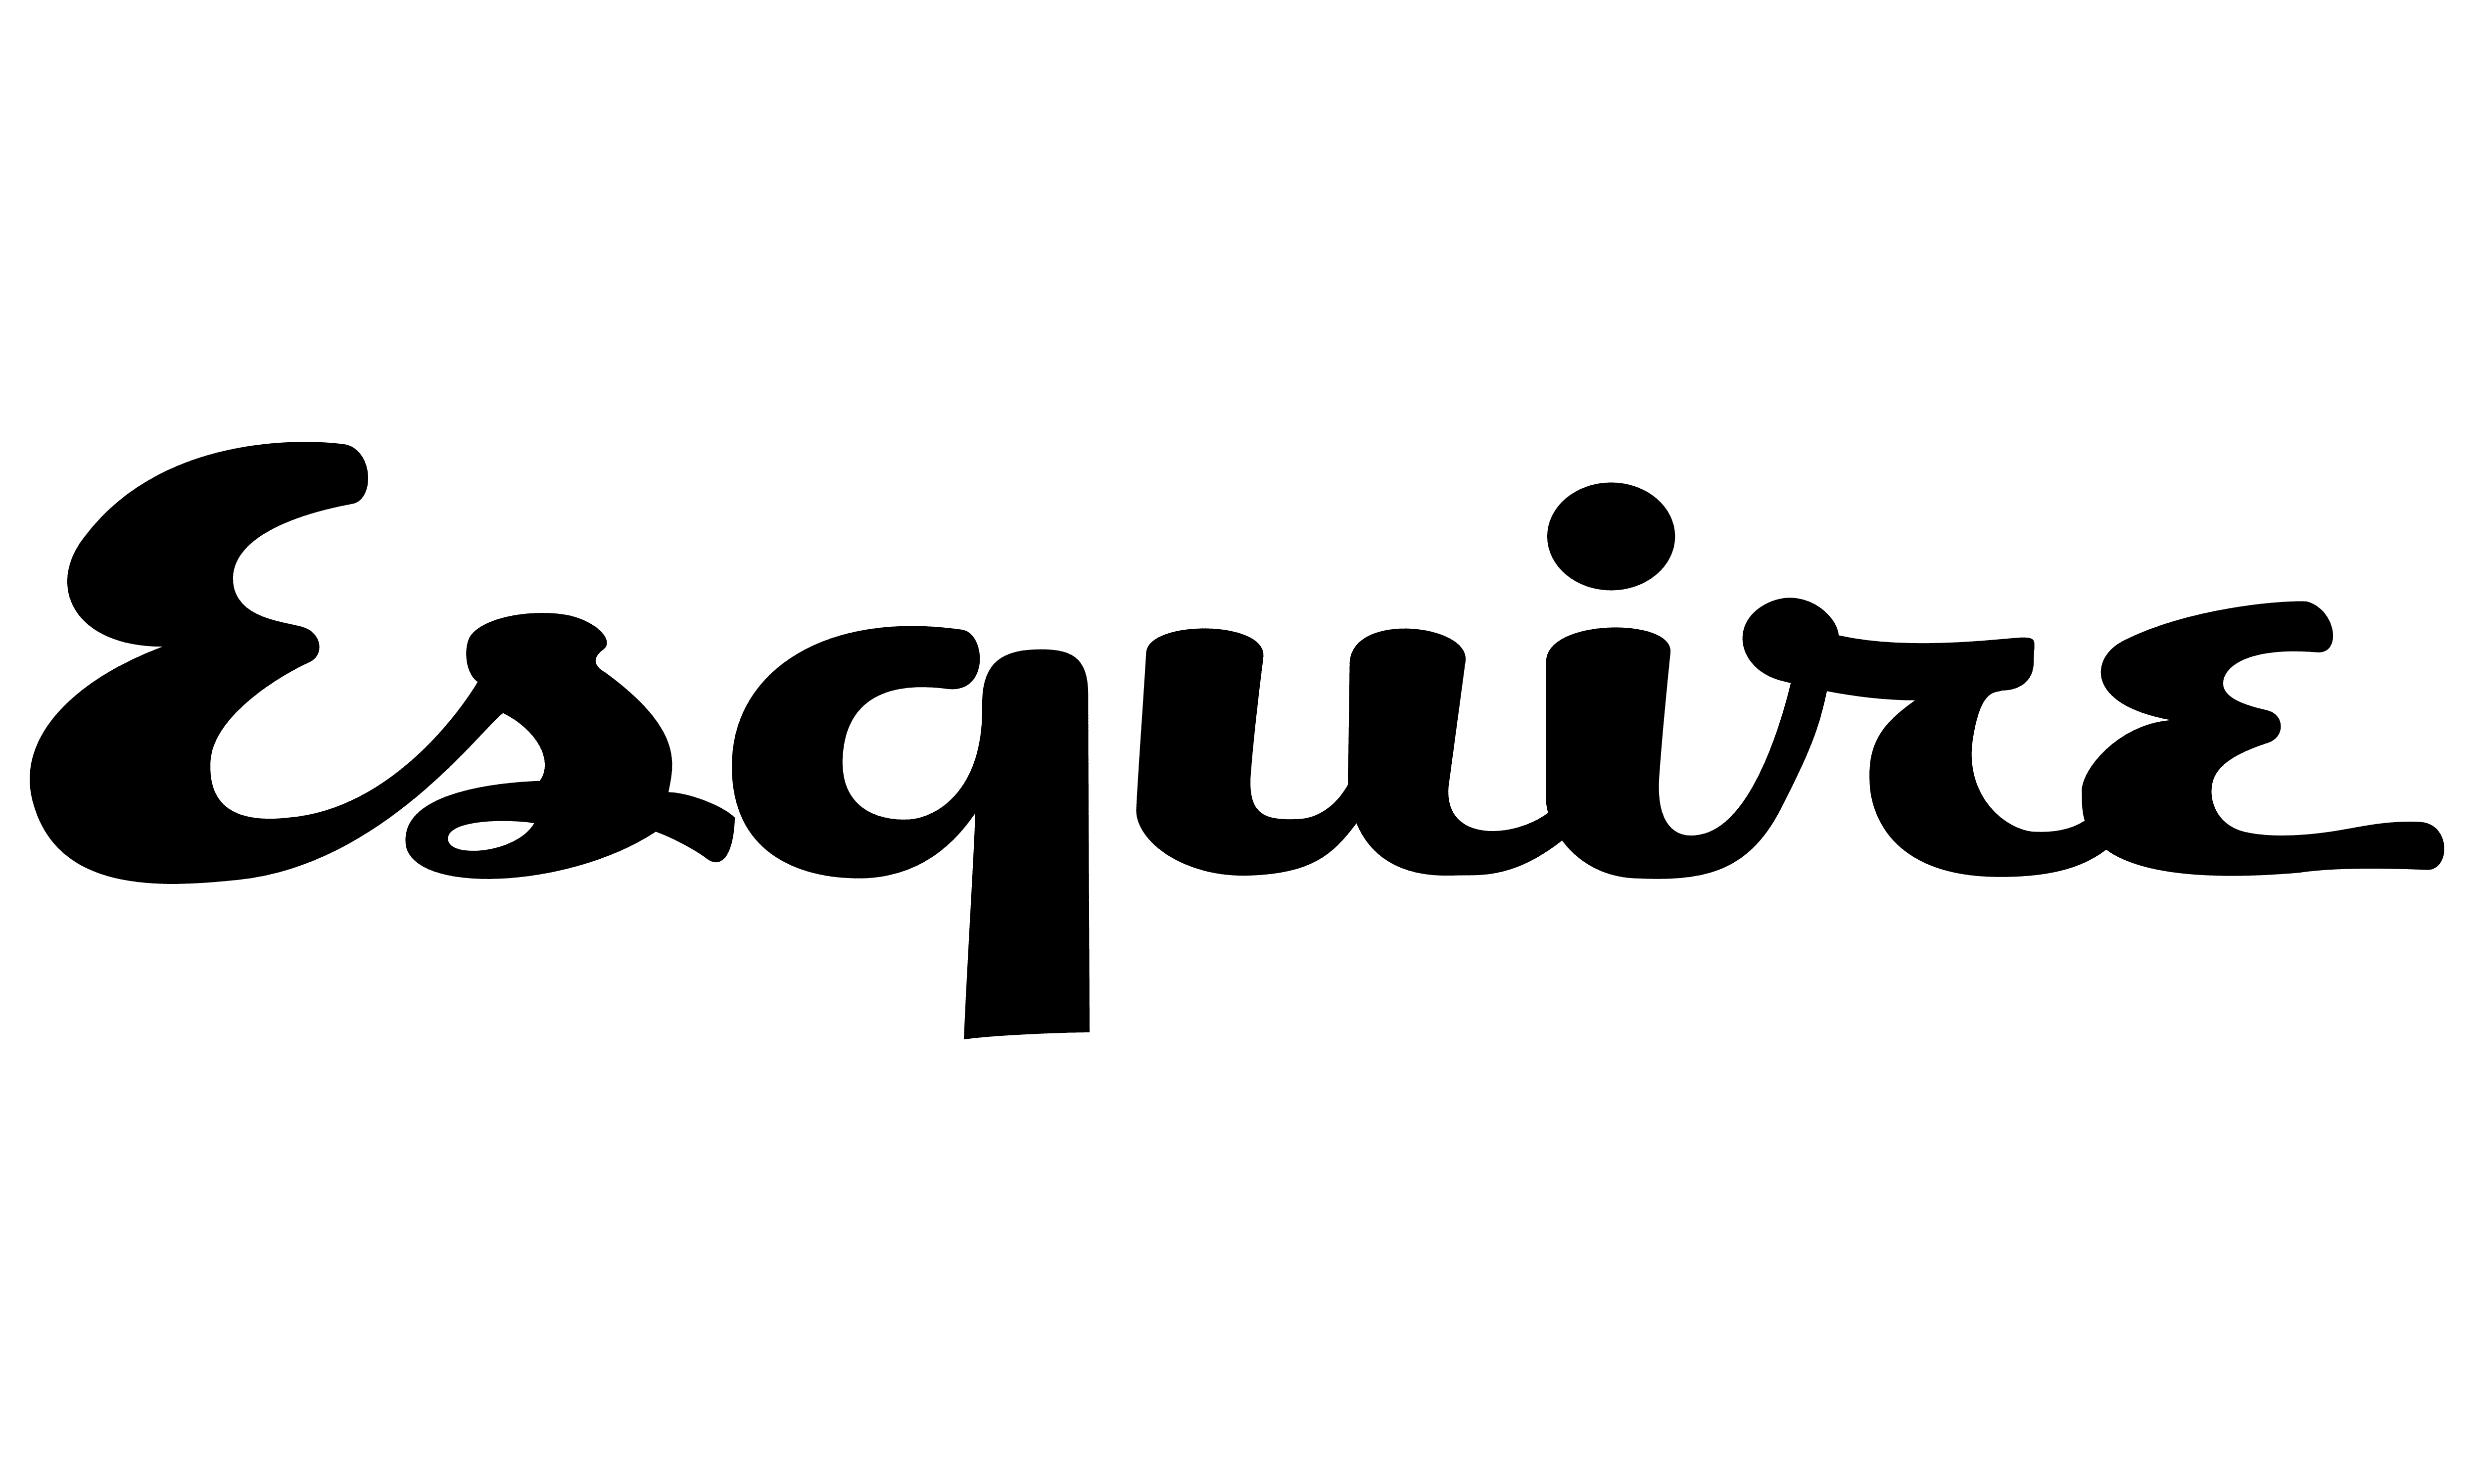 esquire magazine logo png